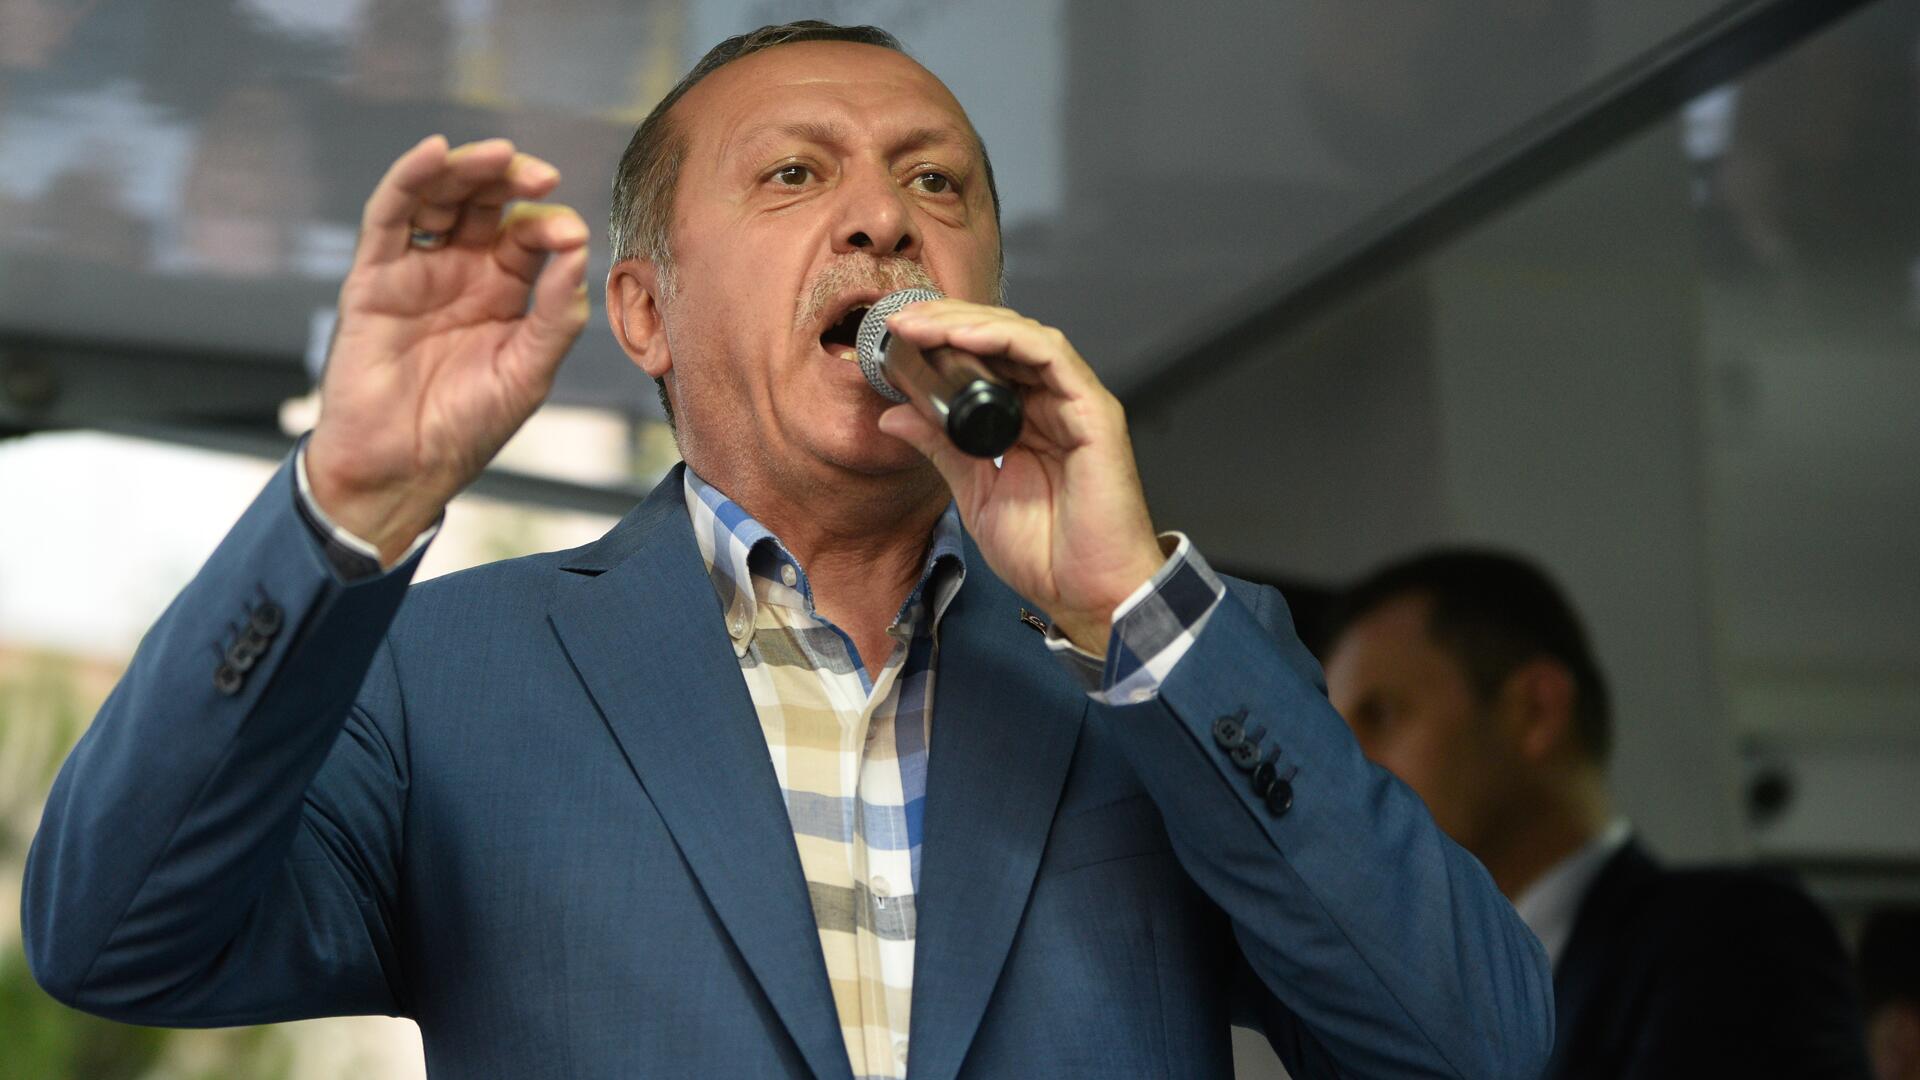 Recep Tayyip Erdogan - Businessperson , HD Wallpaper & Backgrounds